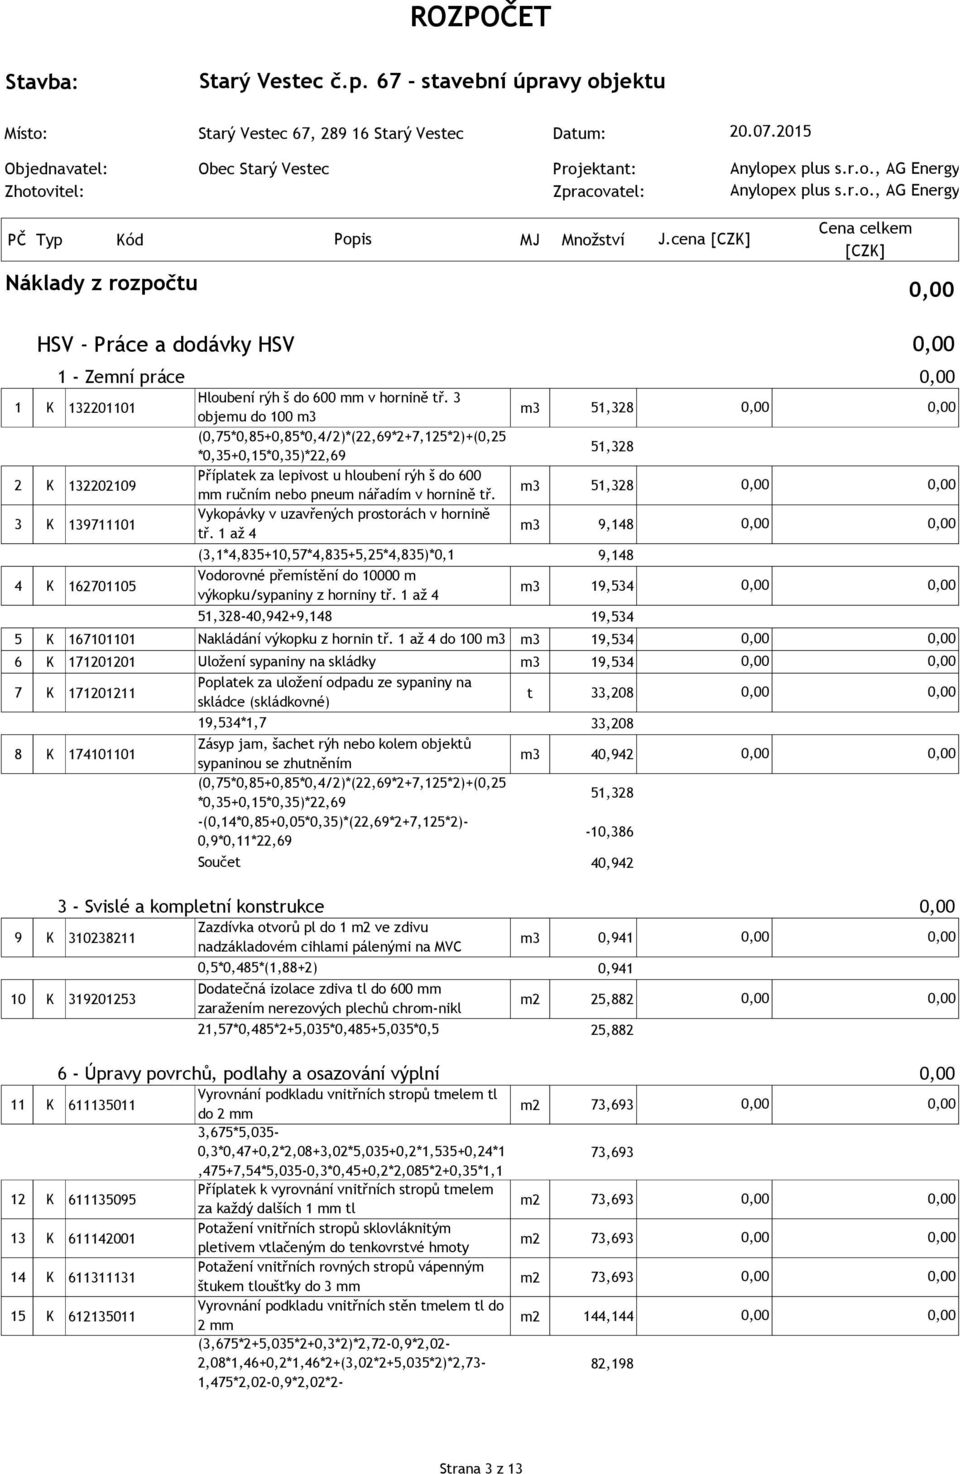 cena HSV - Práce a dodávky HSV 1 - Zemní práce 1 K 132201101 Hloubení rýh š do 600 mm v hornině tř.